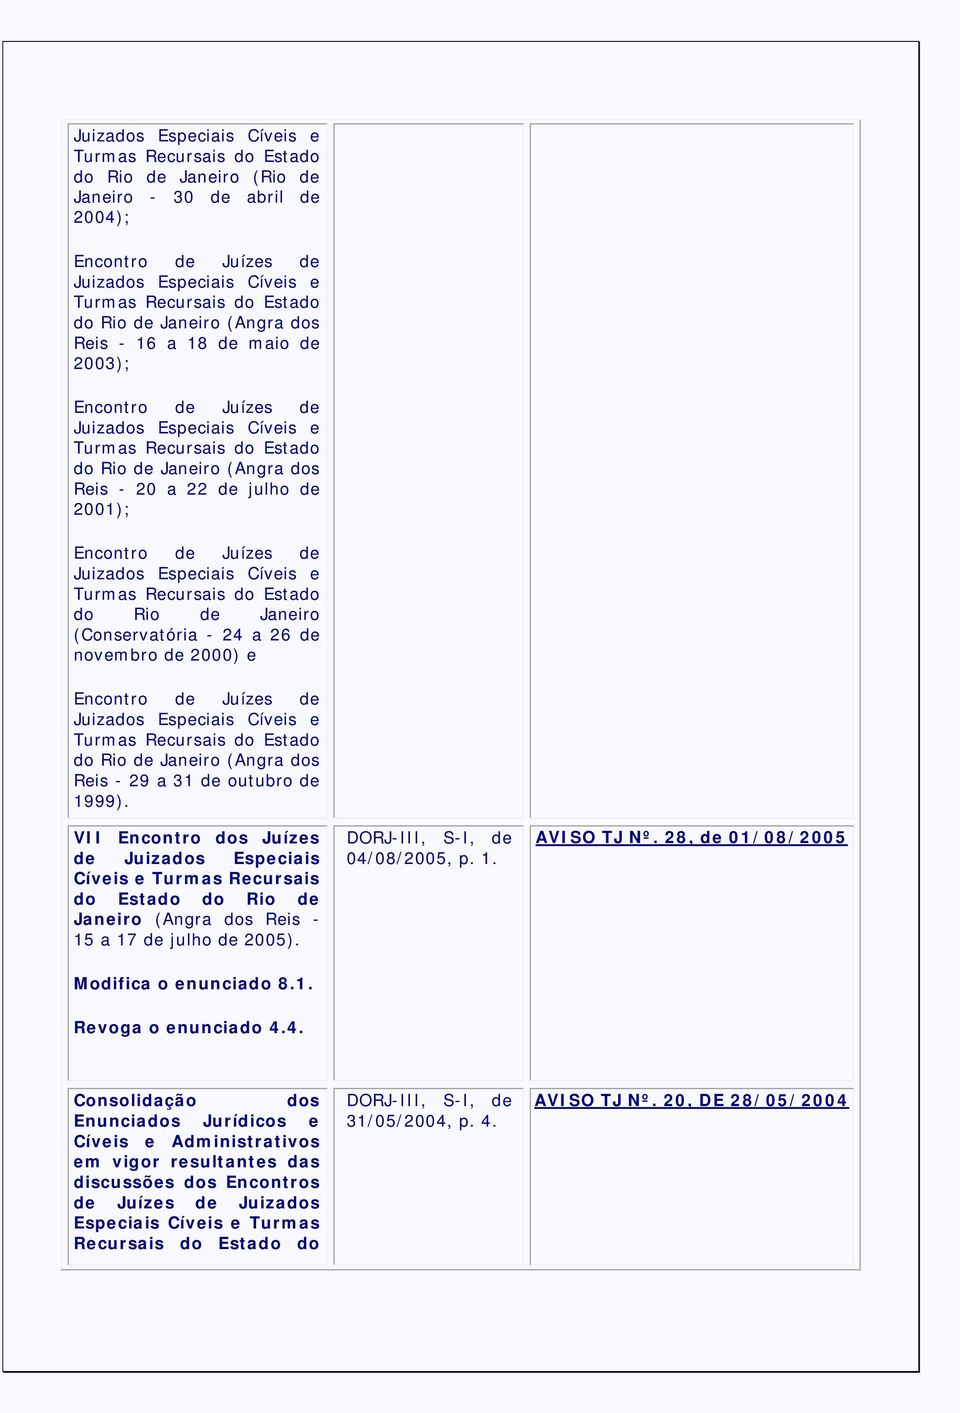 Encontro de Juízes de Juizados Especiais Cíveis e Turmas Recursais do Estado do Rio de Janeiro (Conservatória - 24 a 26 de novembro de 2000) e Encontro de Juízes de Juizados Especiais Cíveis e Turmas